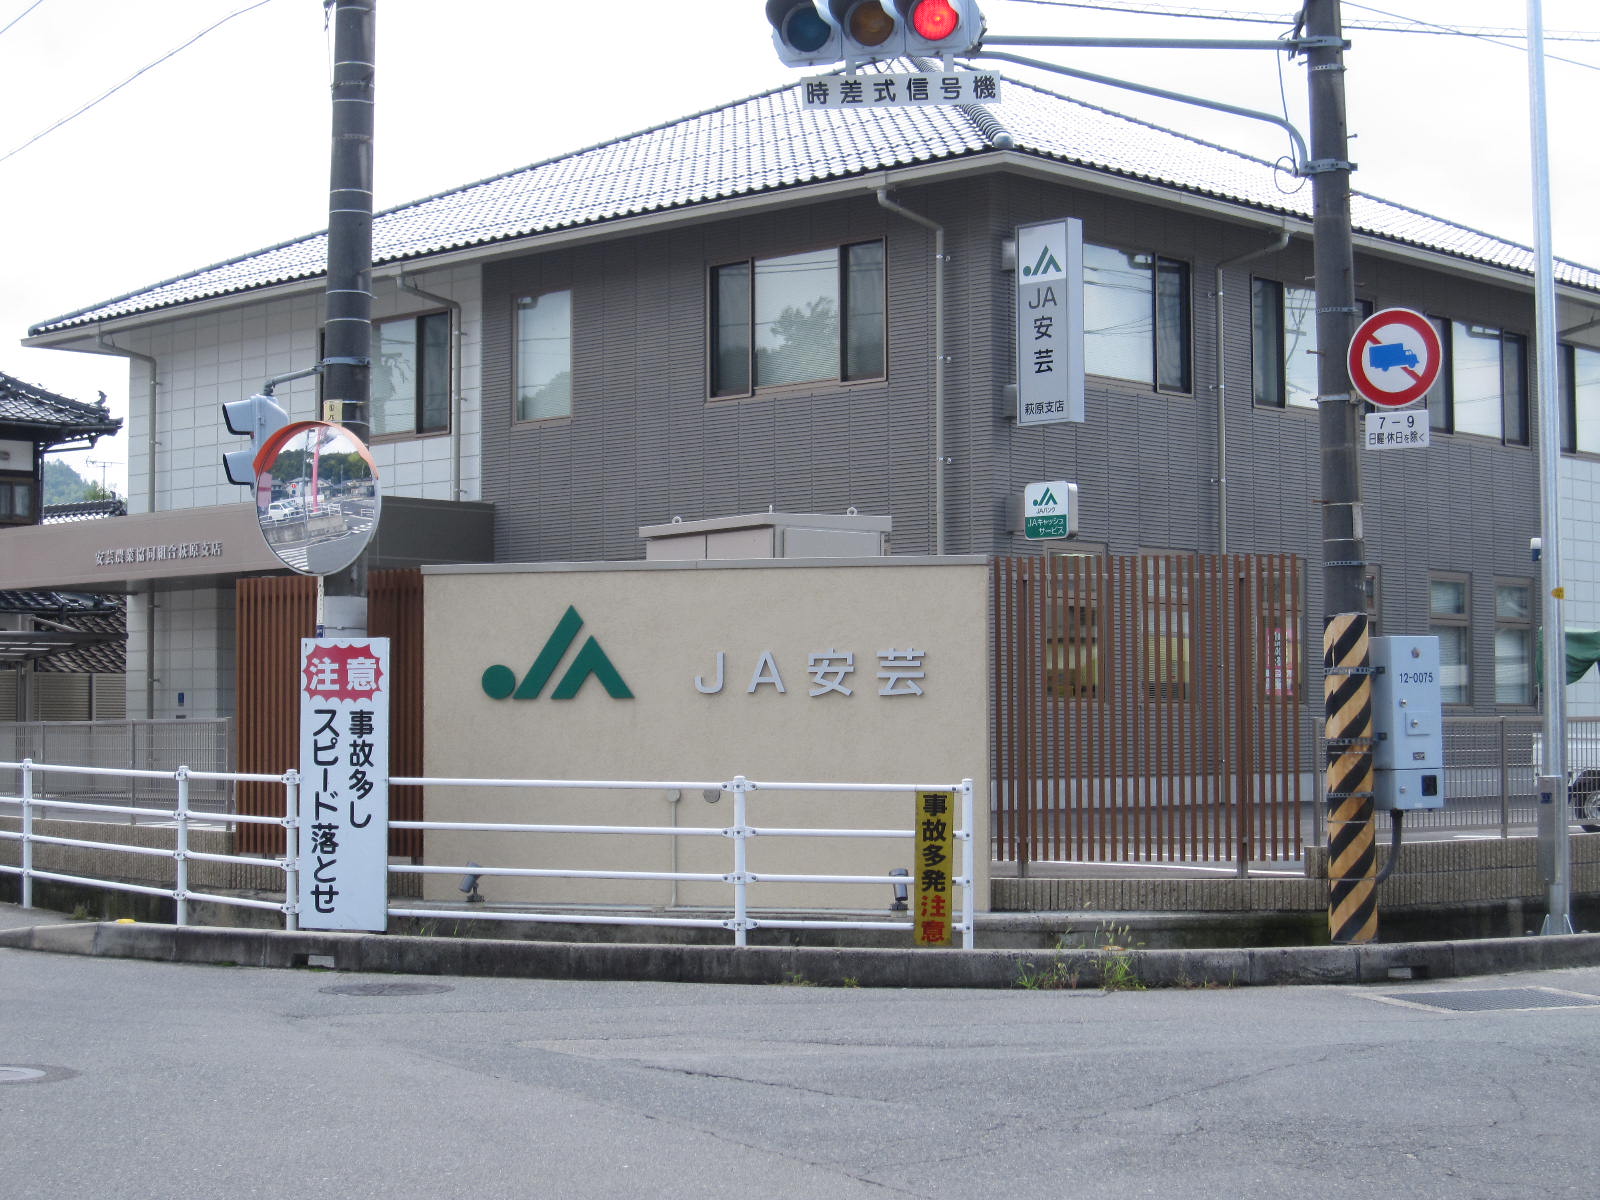 Bank. JA 1158m until Aki Hagiwara Branch (Bank)